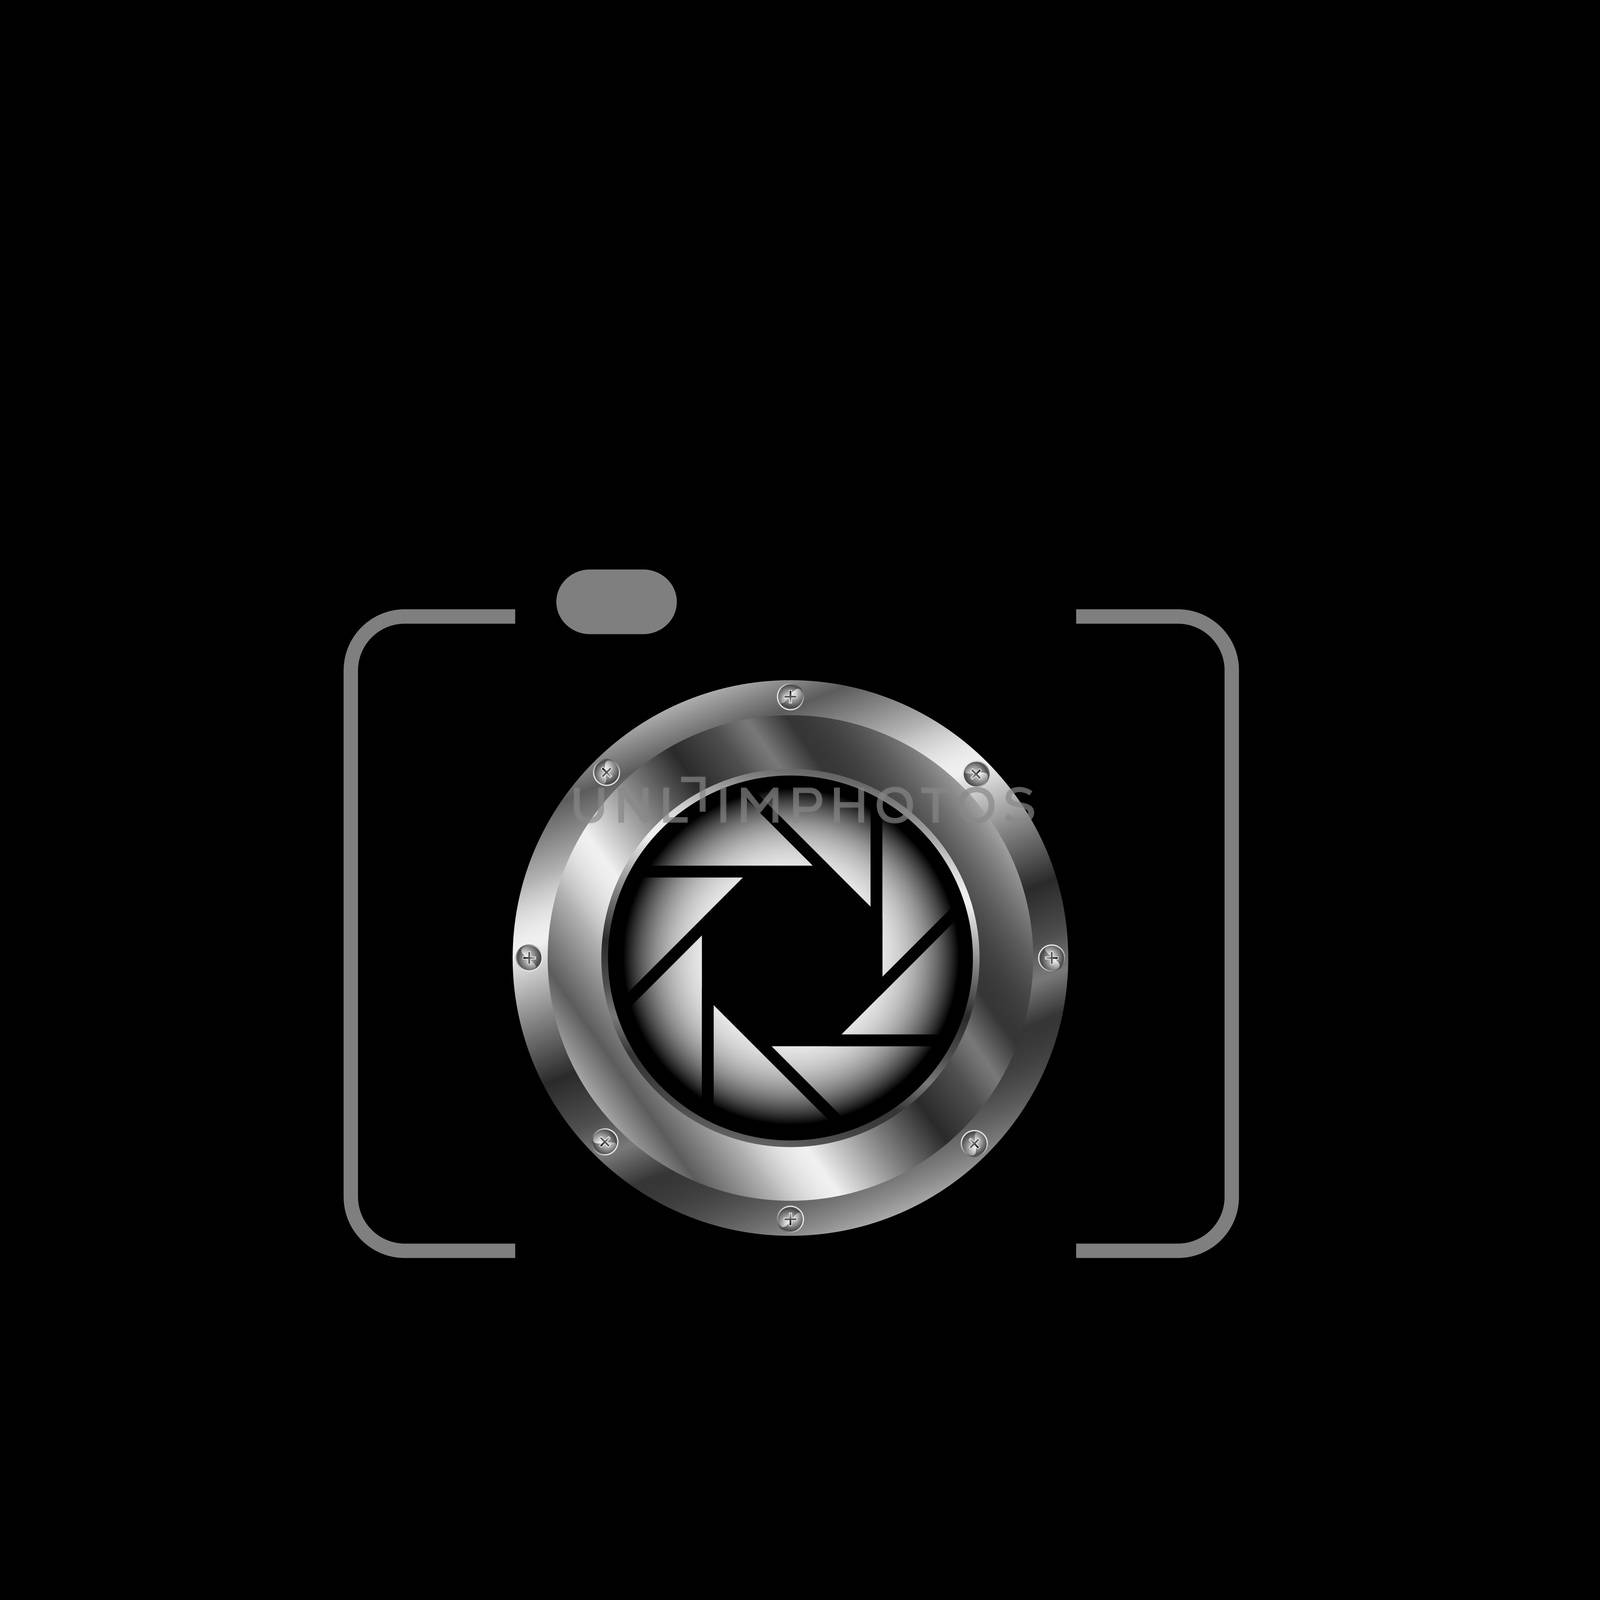 Digital camera logo